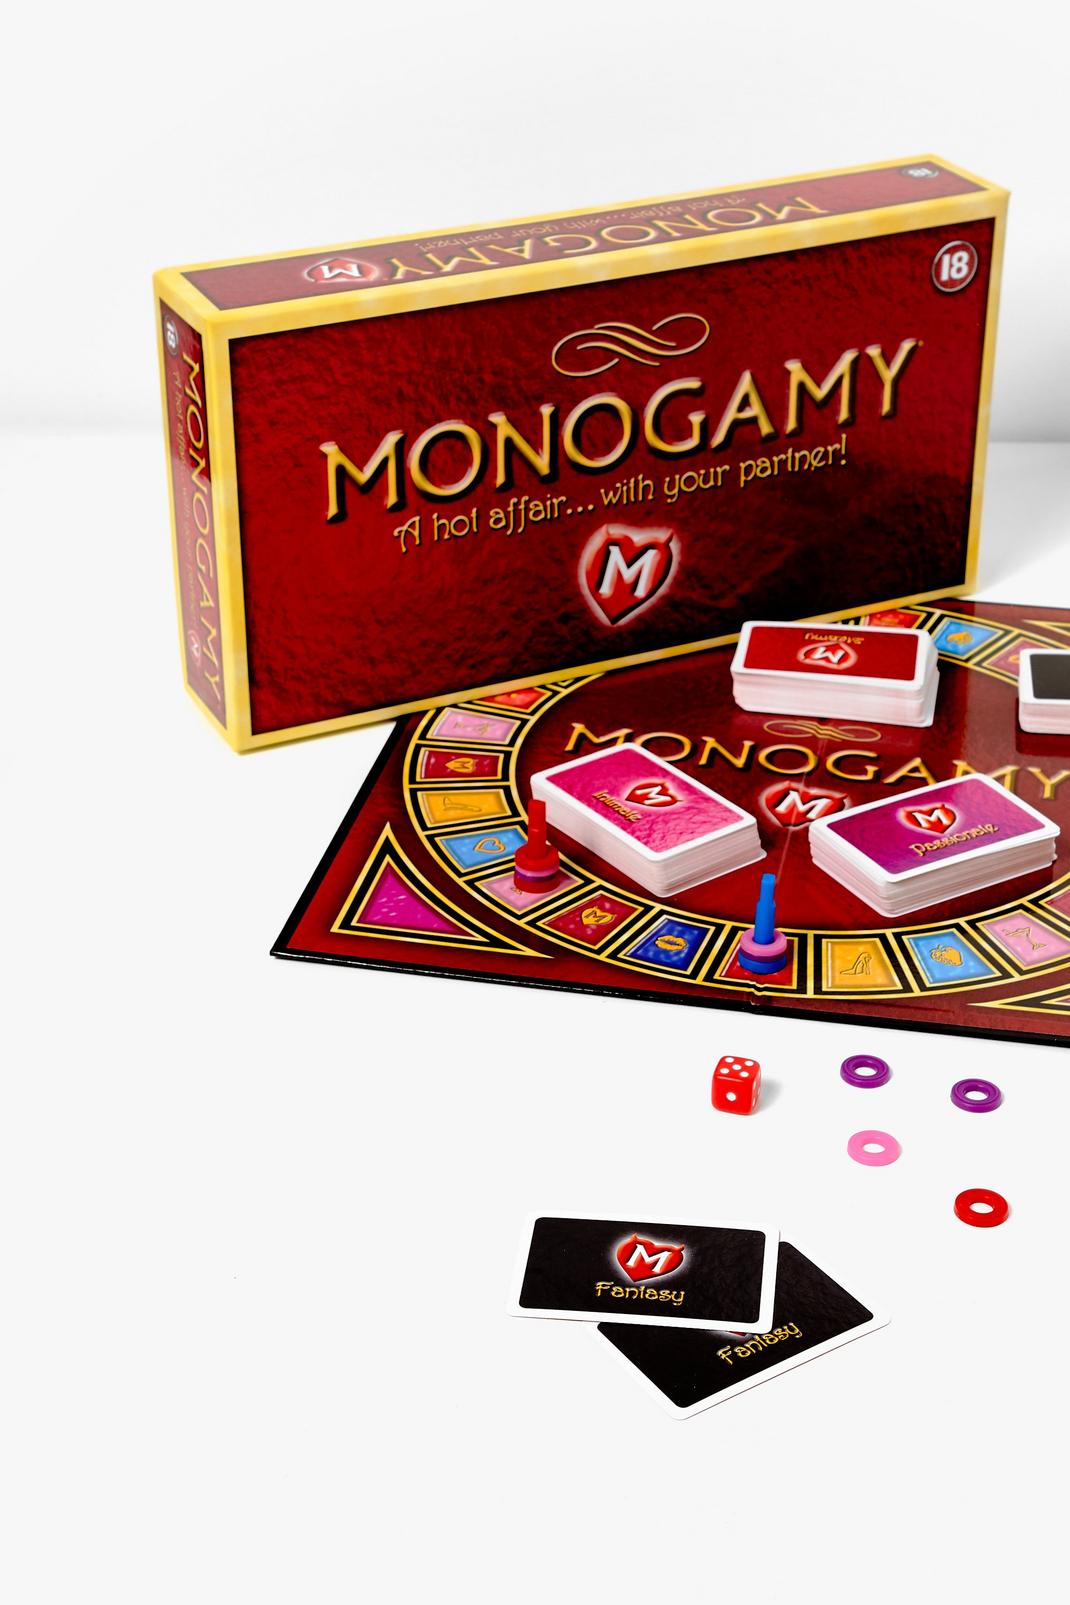 Monogamy Intimacy Sex Game